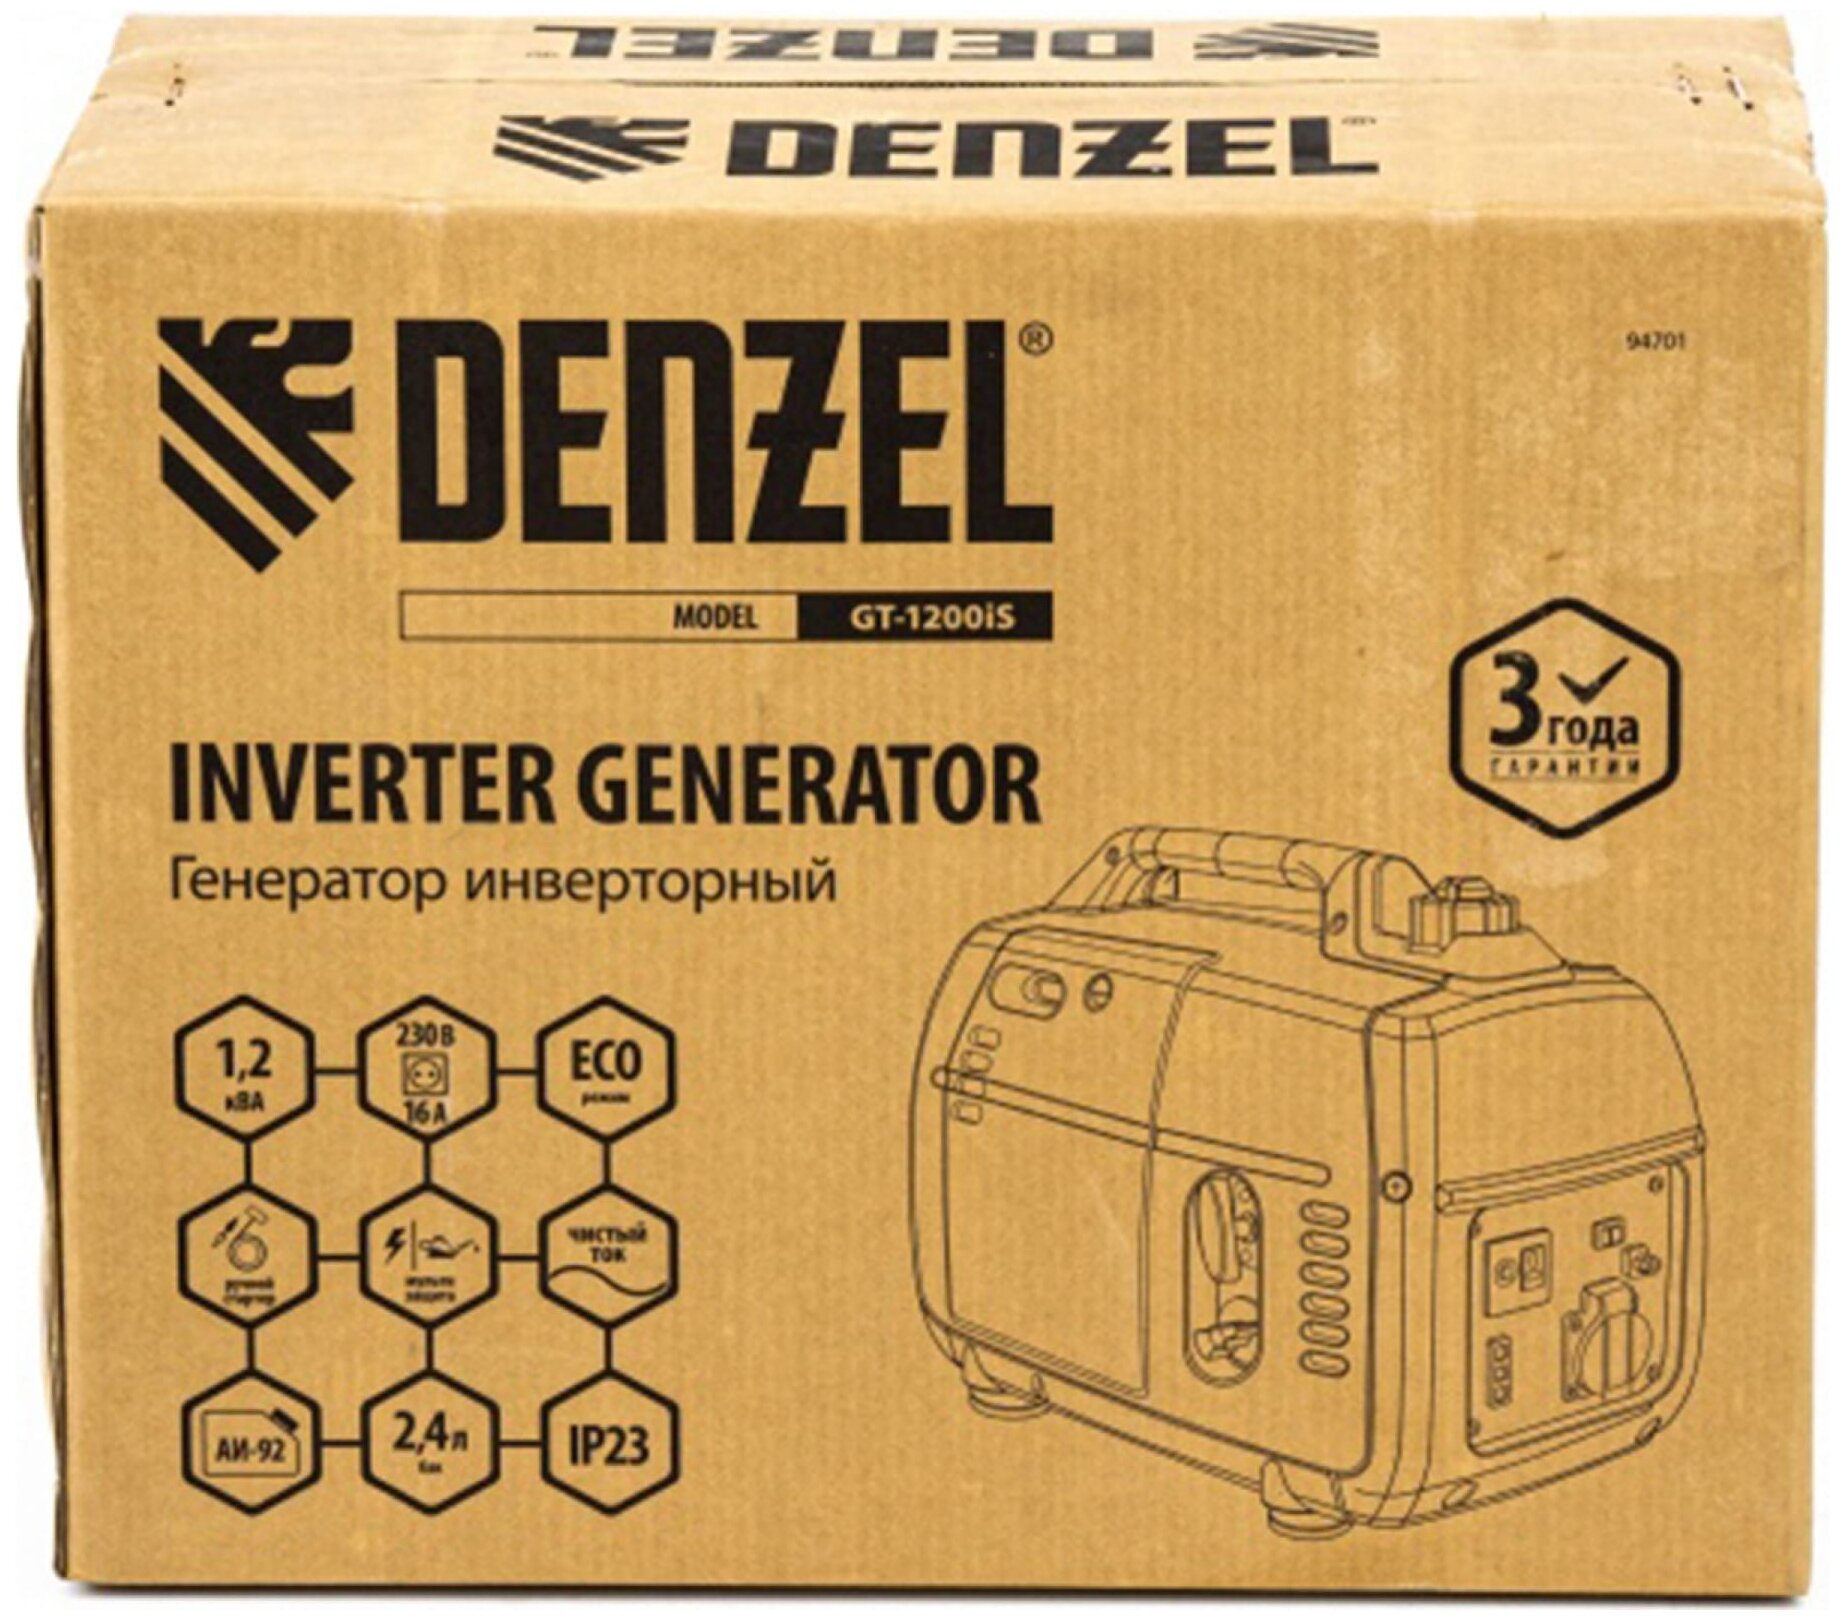 Генератор инверторный GT-1200iS, 1,2 кВт, 230 В, бак 2,4 л, закрытый корпус, ручной старт Denzel [94701] - фотография № 15